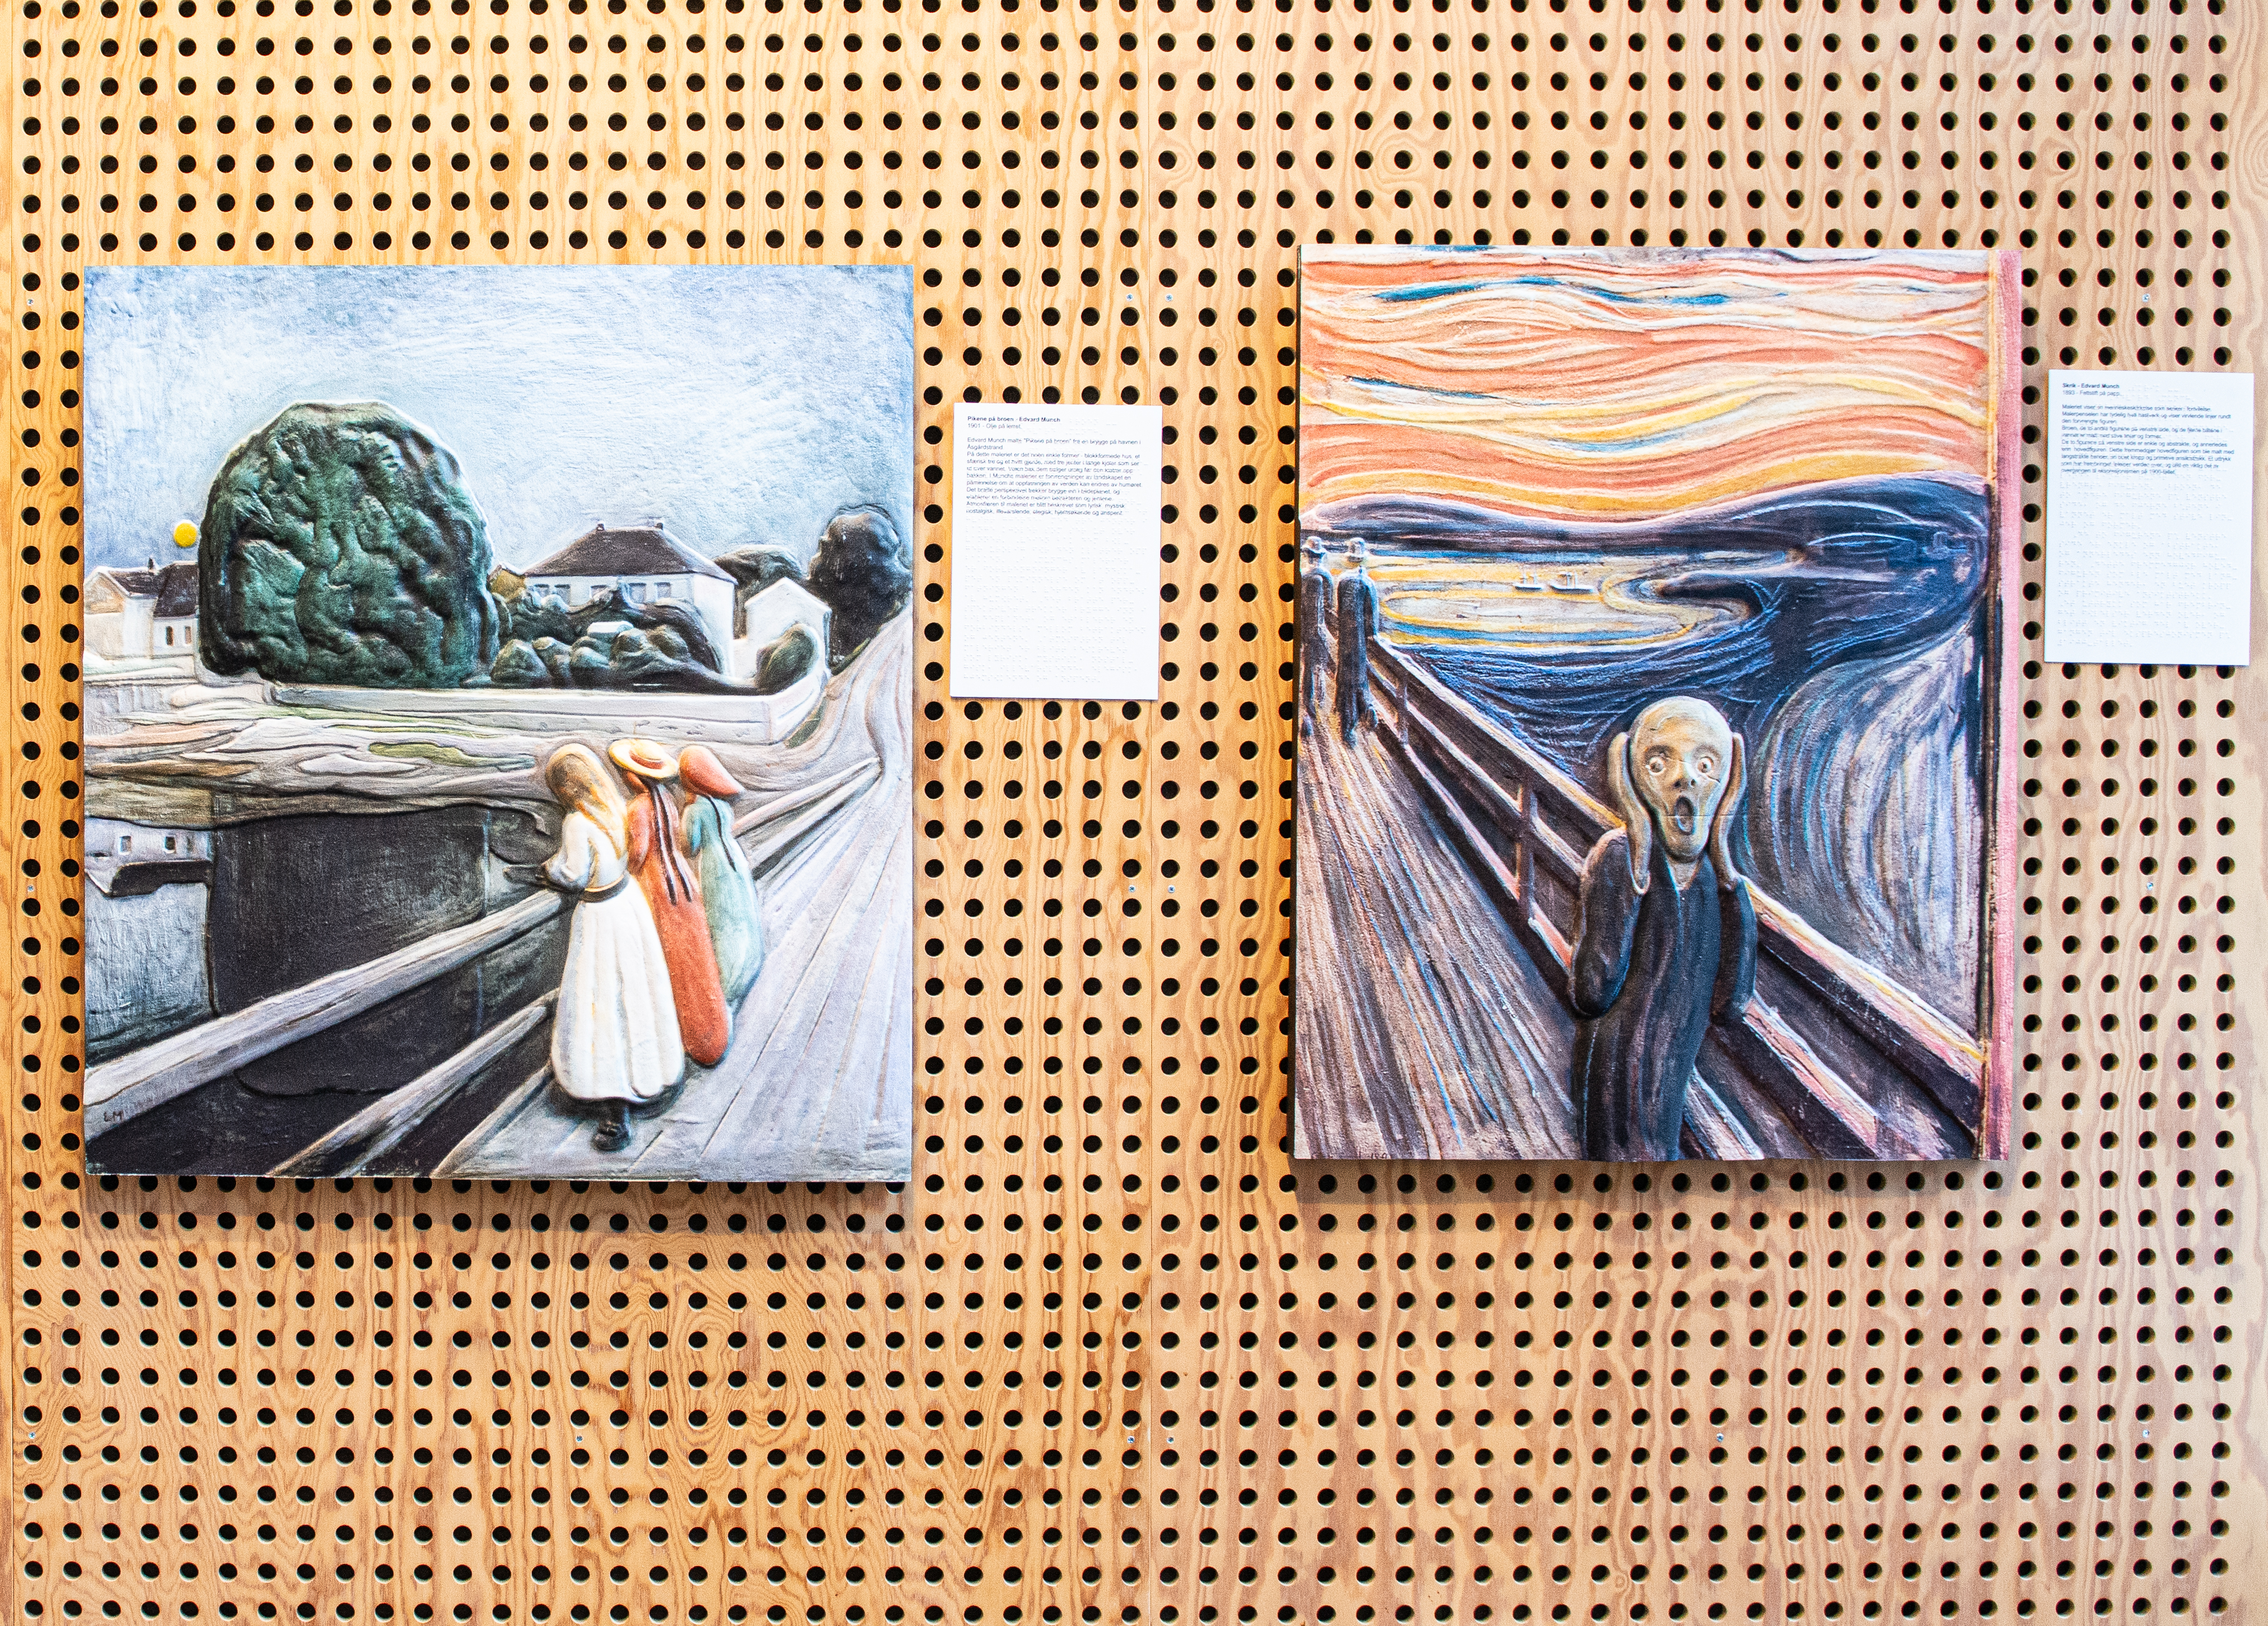 Bilde av to malerier festet på en vegg.